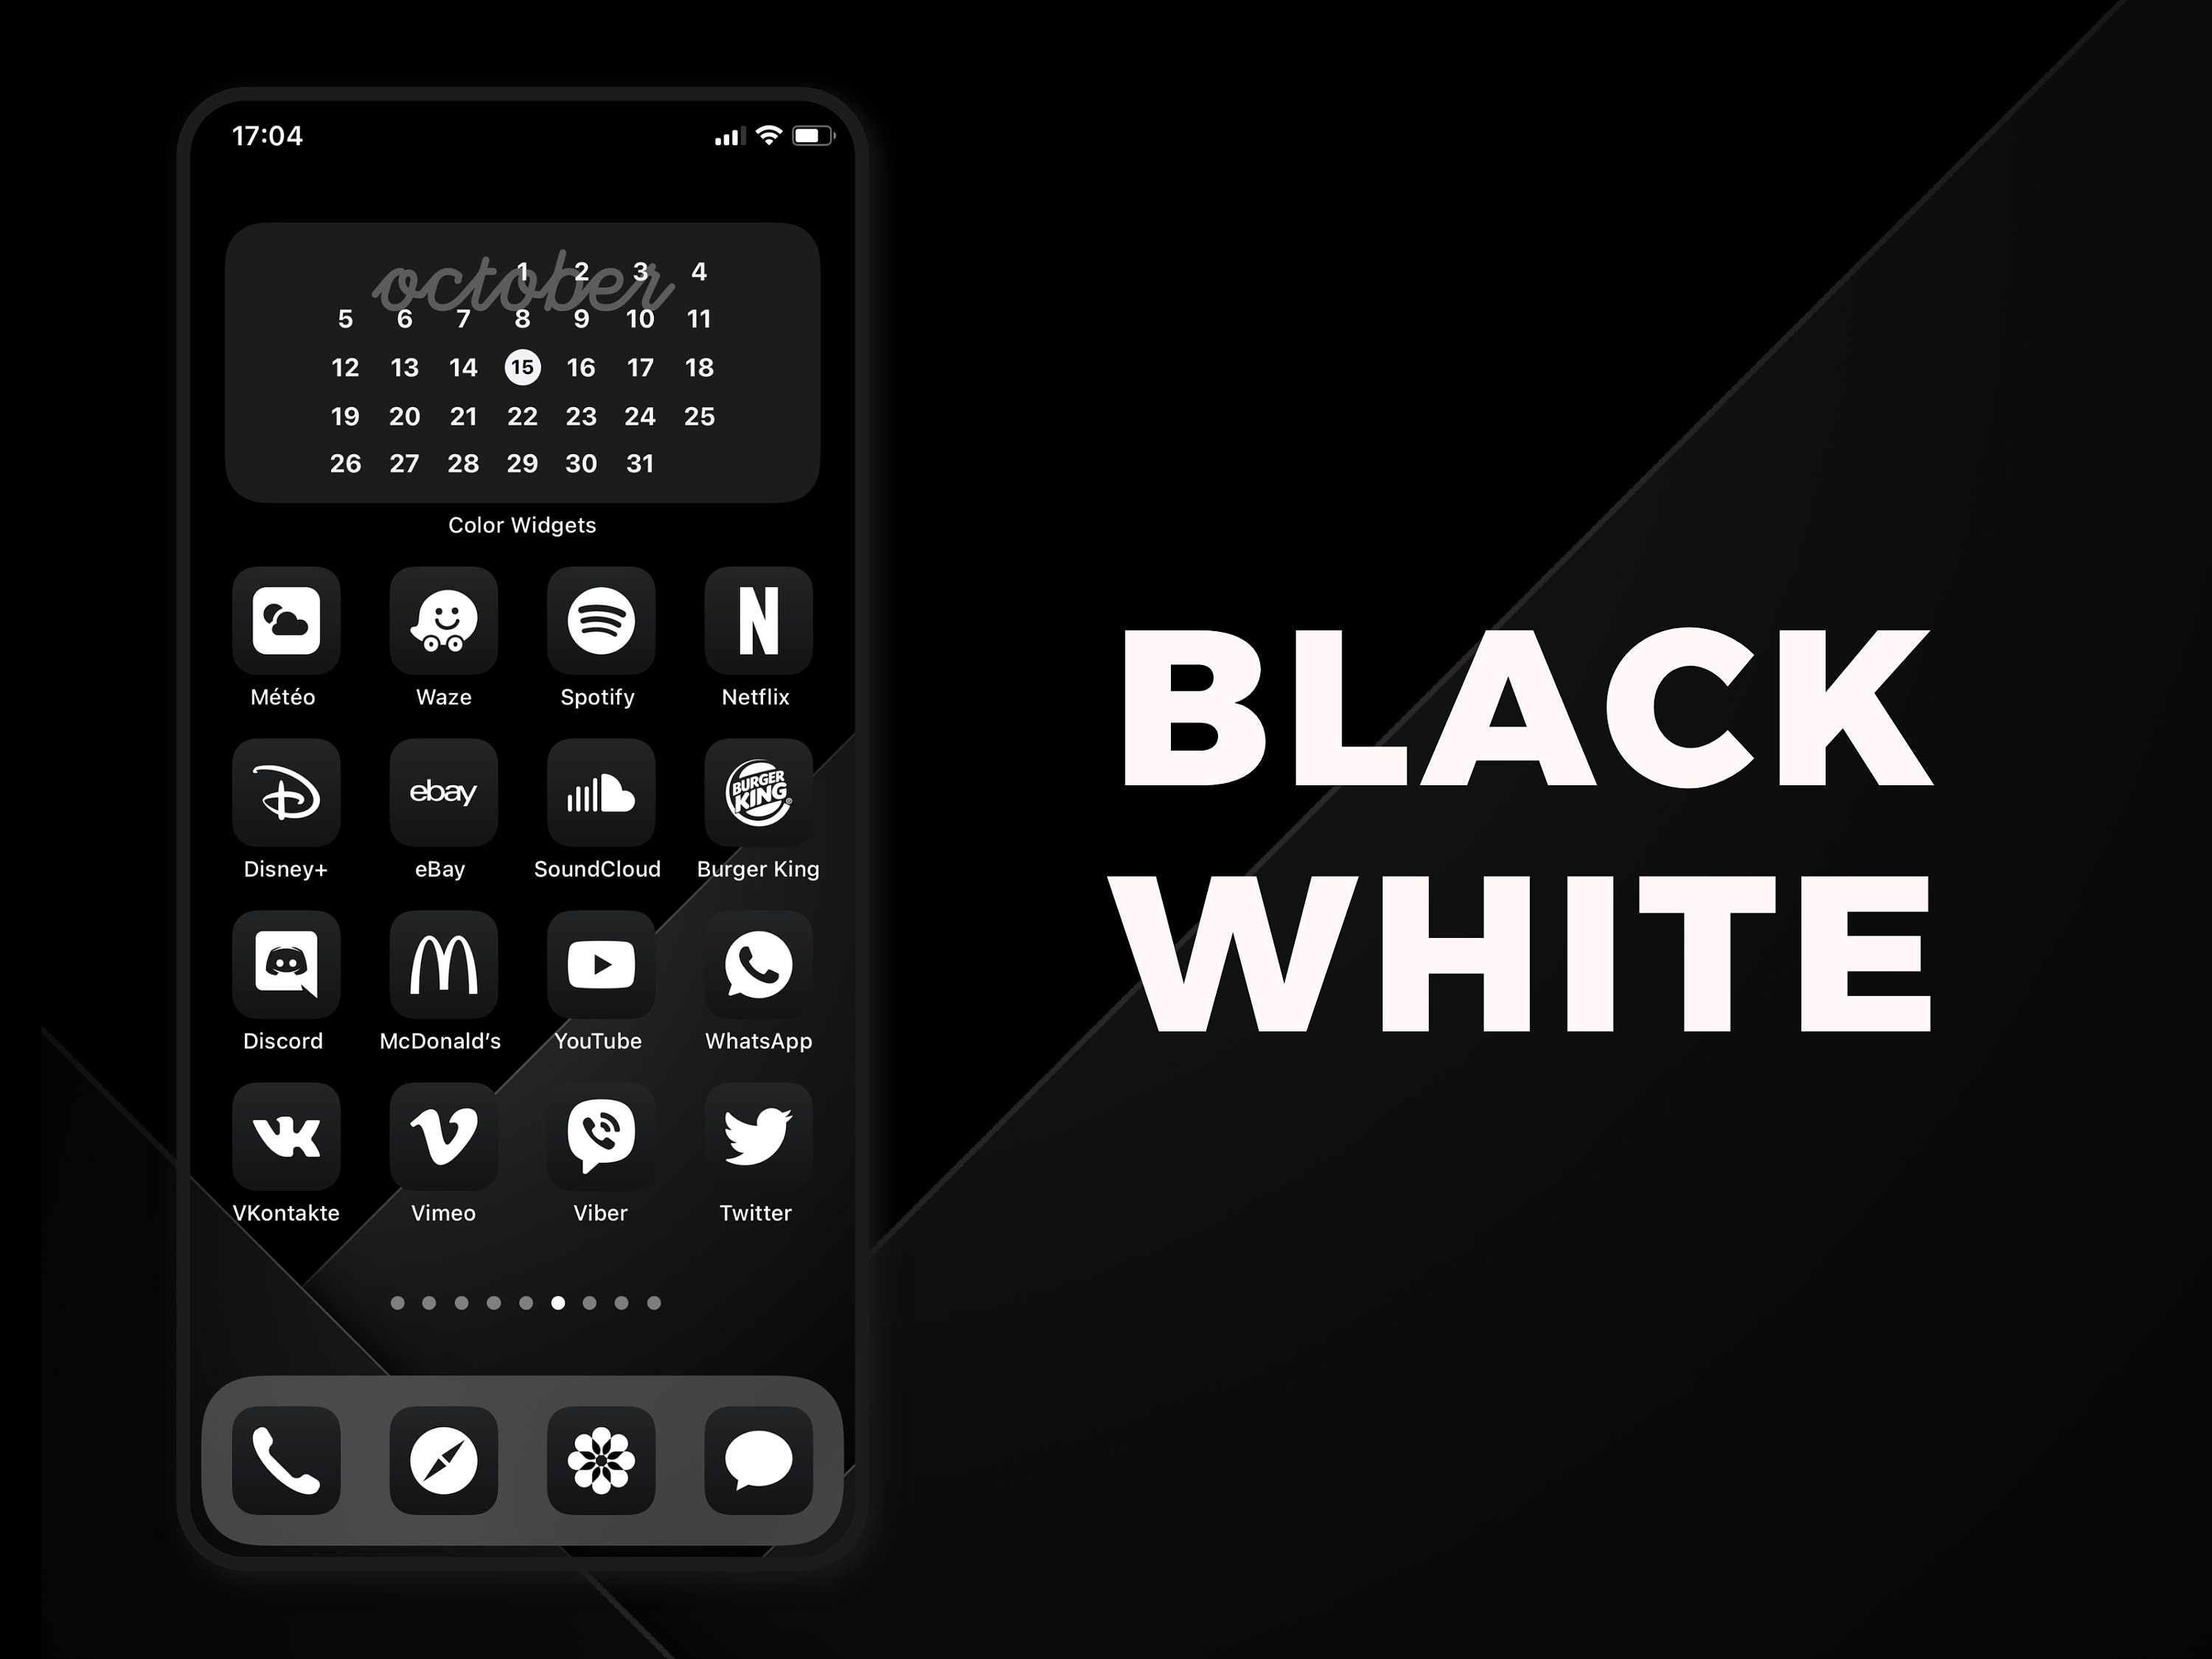 Gói biểu tượng ứng dụng Ios 14 đen trắng: Nếu bạn đang tìm kiếm một cách để làm cho màn hình chính của mình trở nên đẹp mắt hơn, hãy kiểm tra gói biểu tượng ứng dụng iOS 14 đen trắng này. Với những biểu tượng đen trắng siêu đẹp, bạn có thể trang trí cho màn hình iPhone của mình theo phong cách yêu thích của mình.